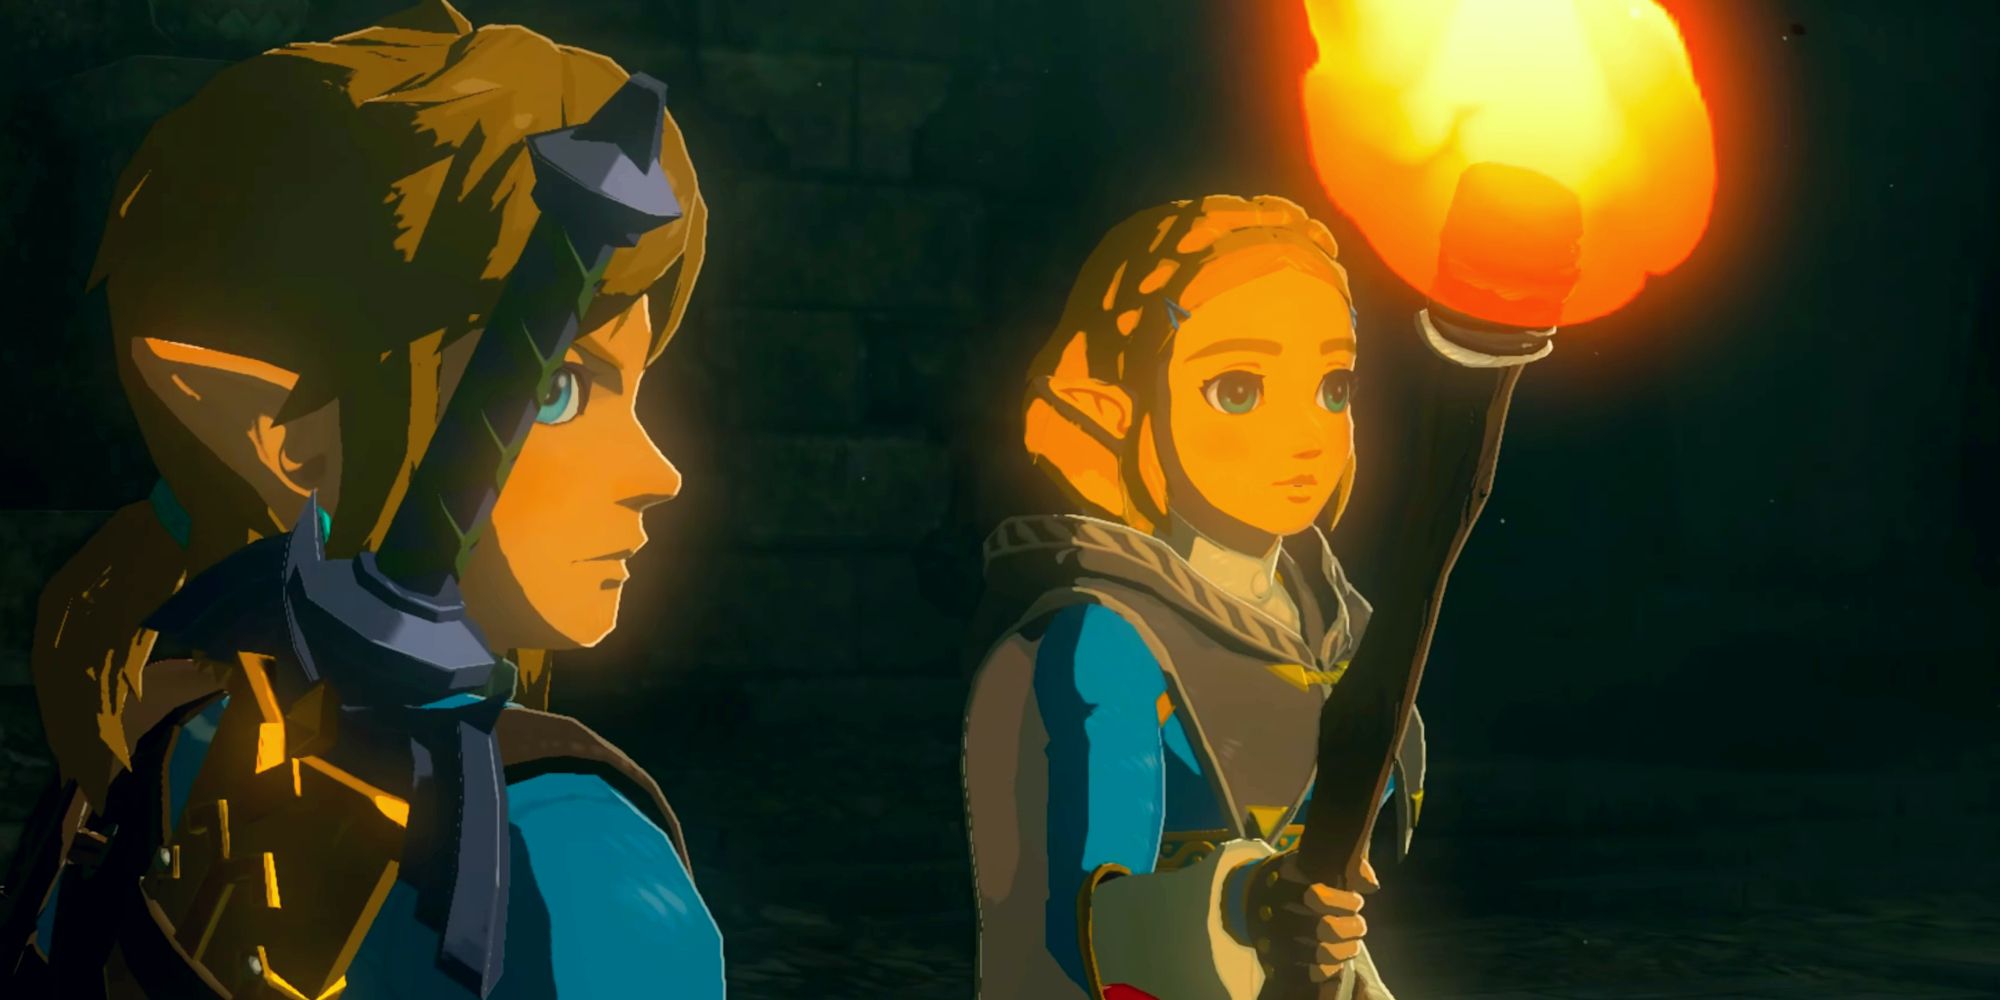 Tangkapan layar dari cutscene pembukaan Tears of the Kingdom, menunjukkan Zelda memegang obor di sebelah Link saat keduanya melihat layar ke kanan.